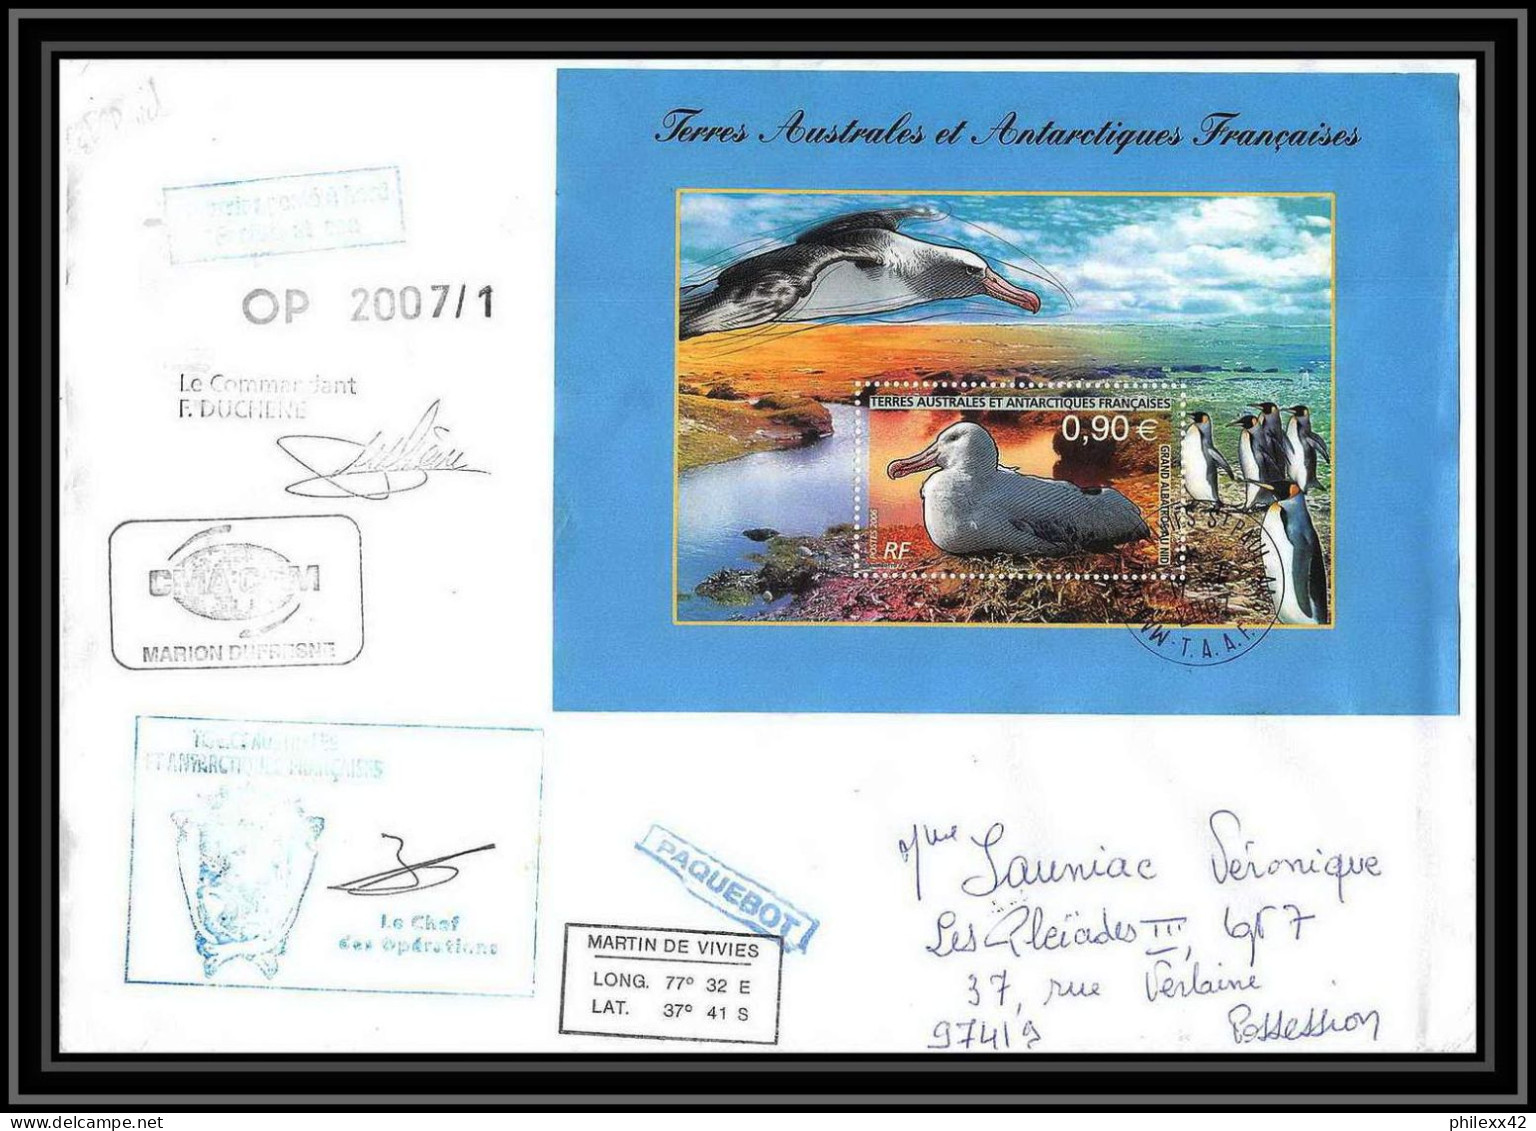 2686 ANTARCTIC Terres Australes TAAF Lettre Dufresne Signé Signed ST PAUL Comptes Réunion Bloc N°16 17/4/2007 - Expediciones Antárticas